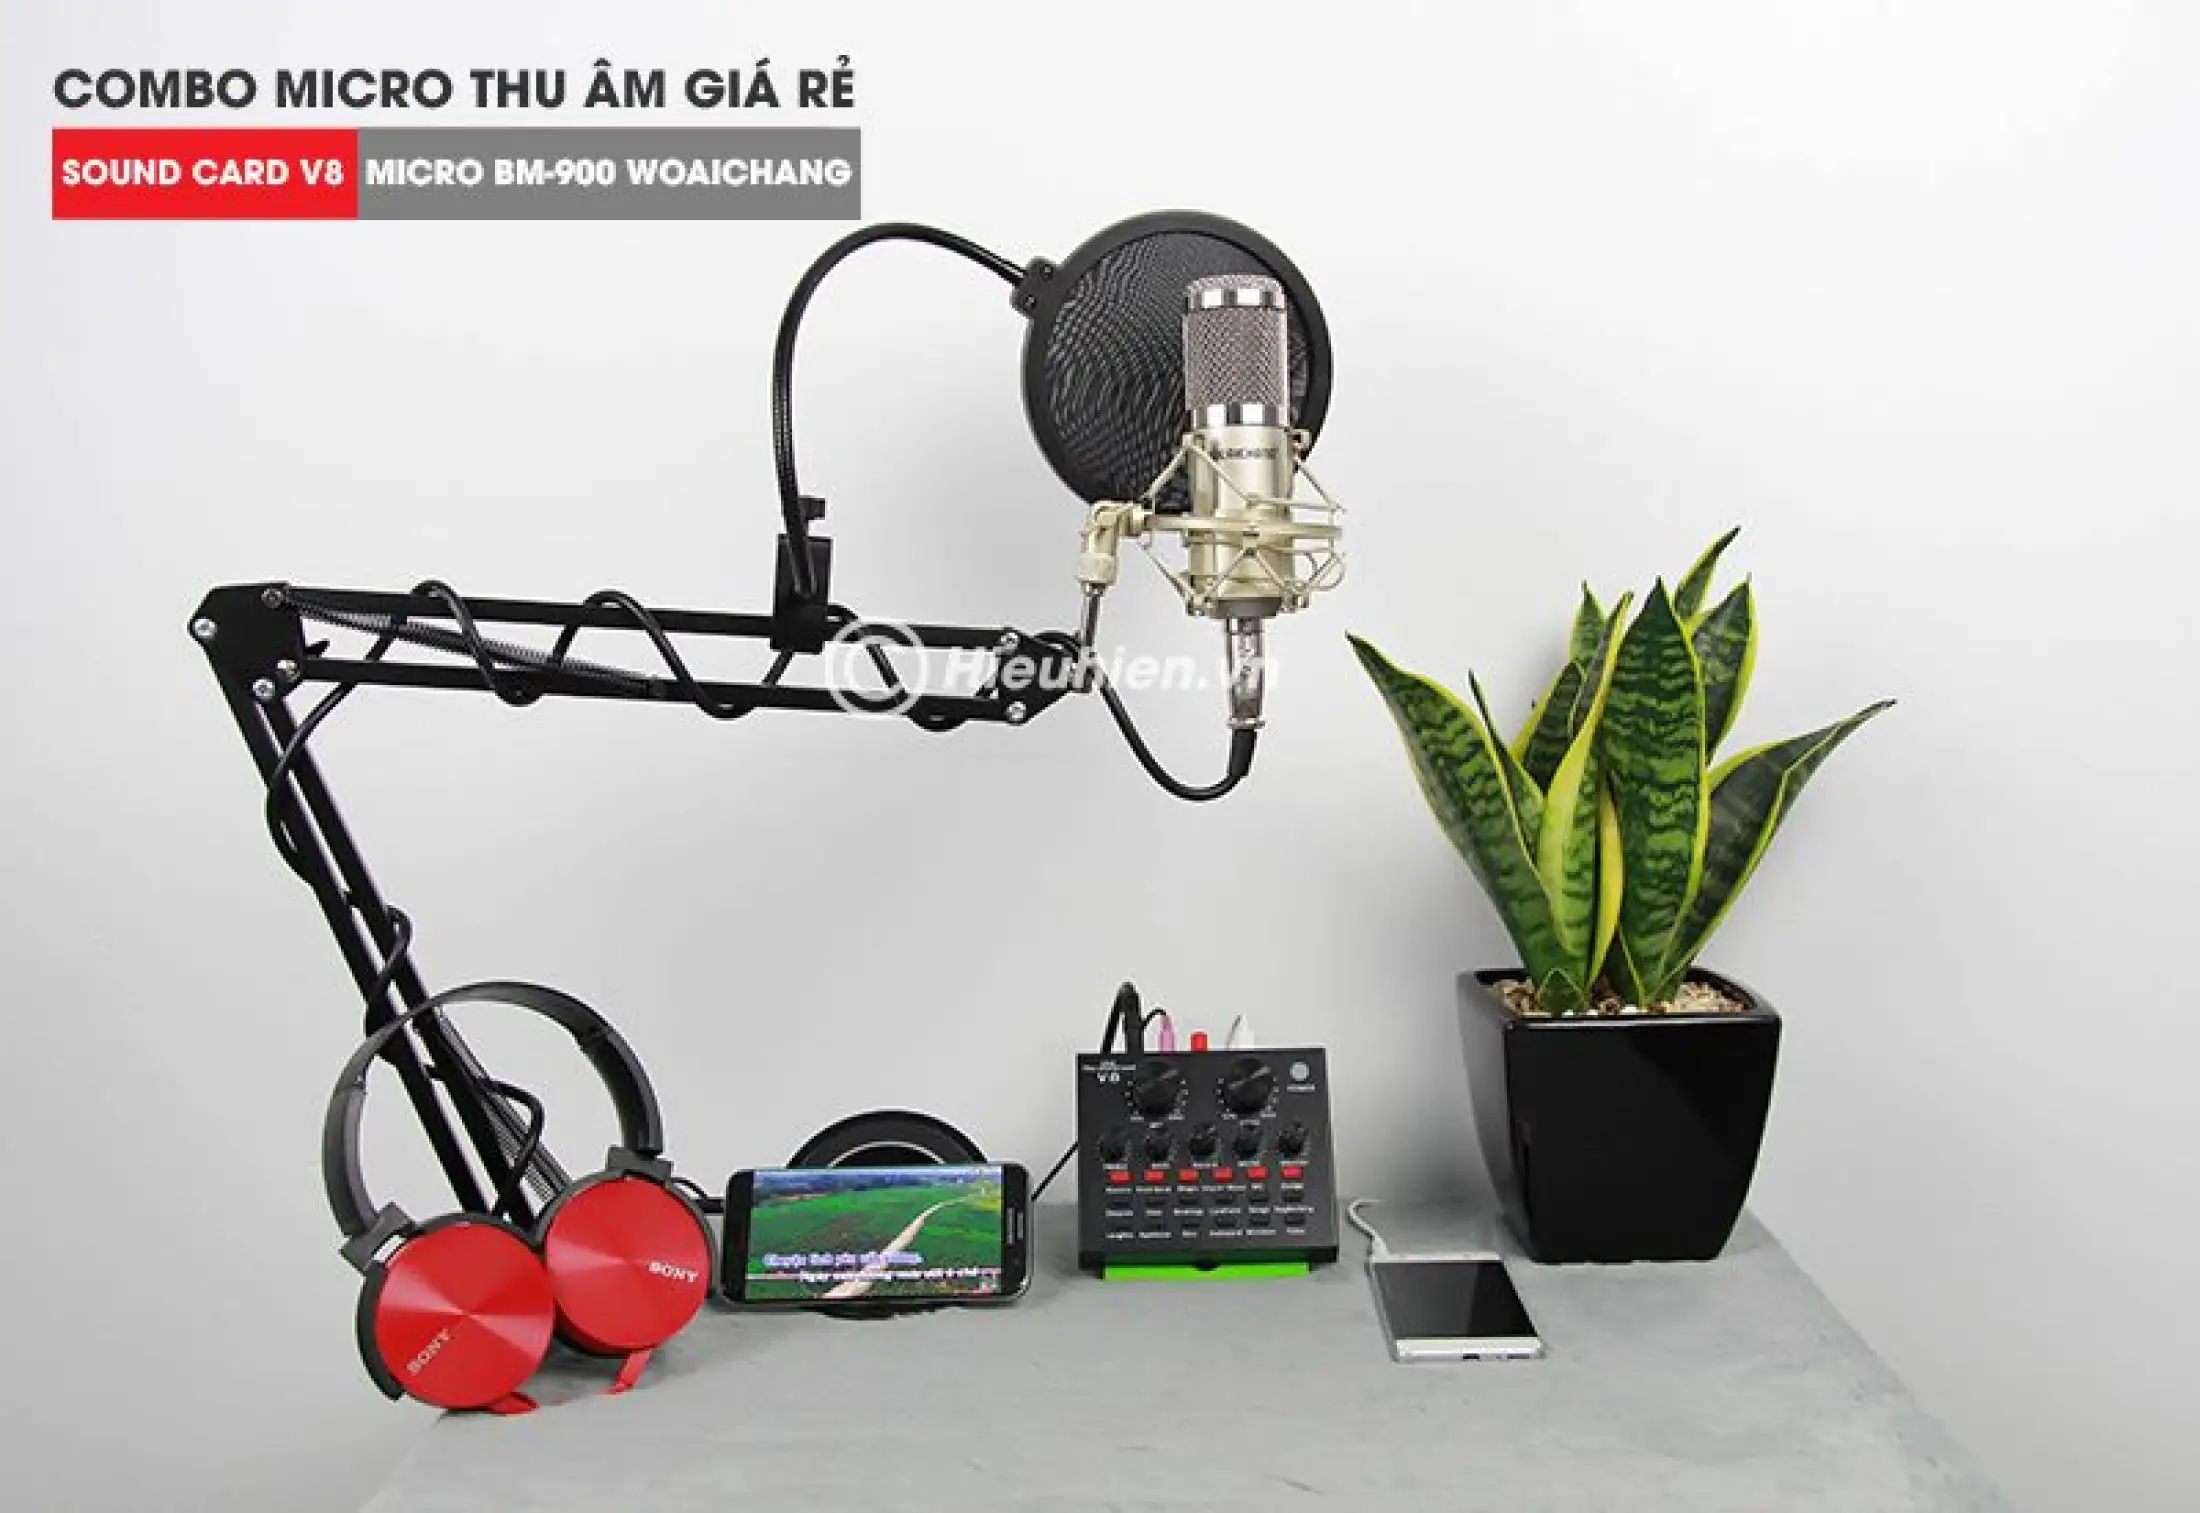 Trọn Bộ Hát Thu Âm Sound-Card V8 + Micro BM900 Live Stream Oneline Tại Nhà